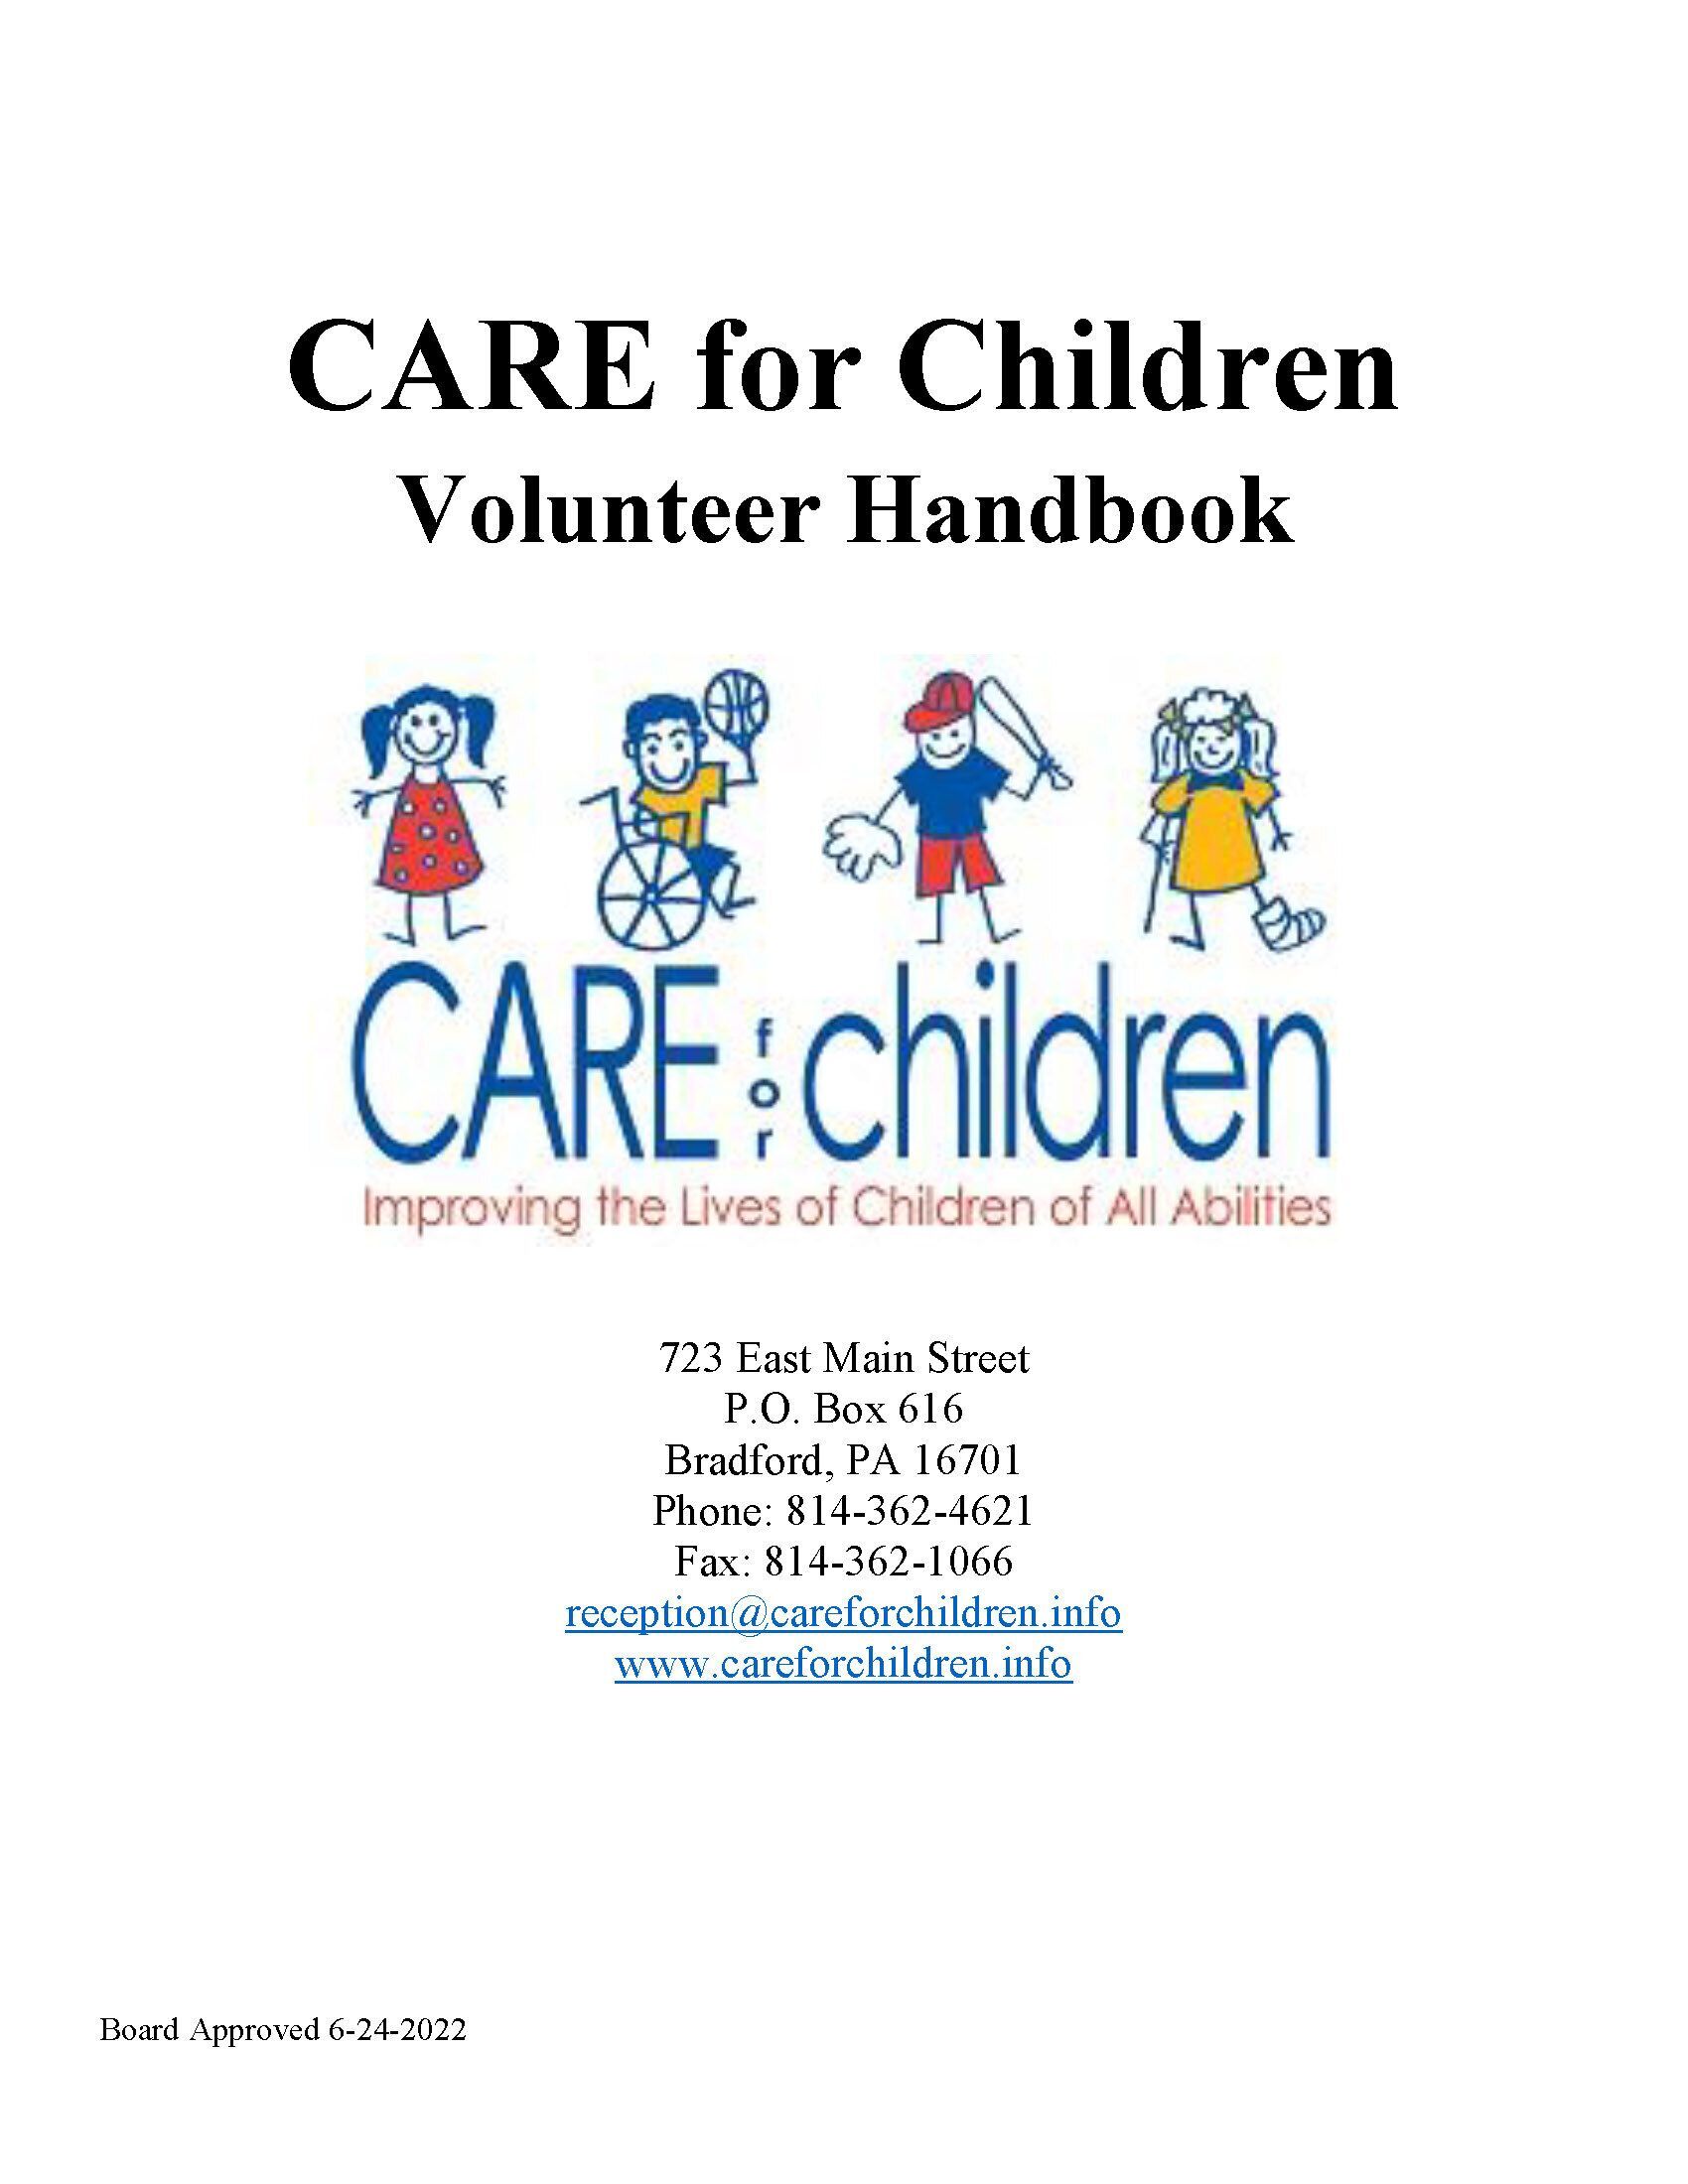 Download the CARE for Children Volunteer Handbook